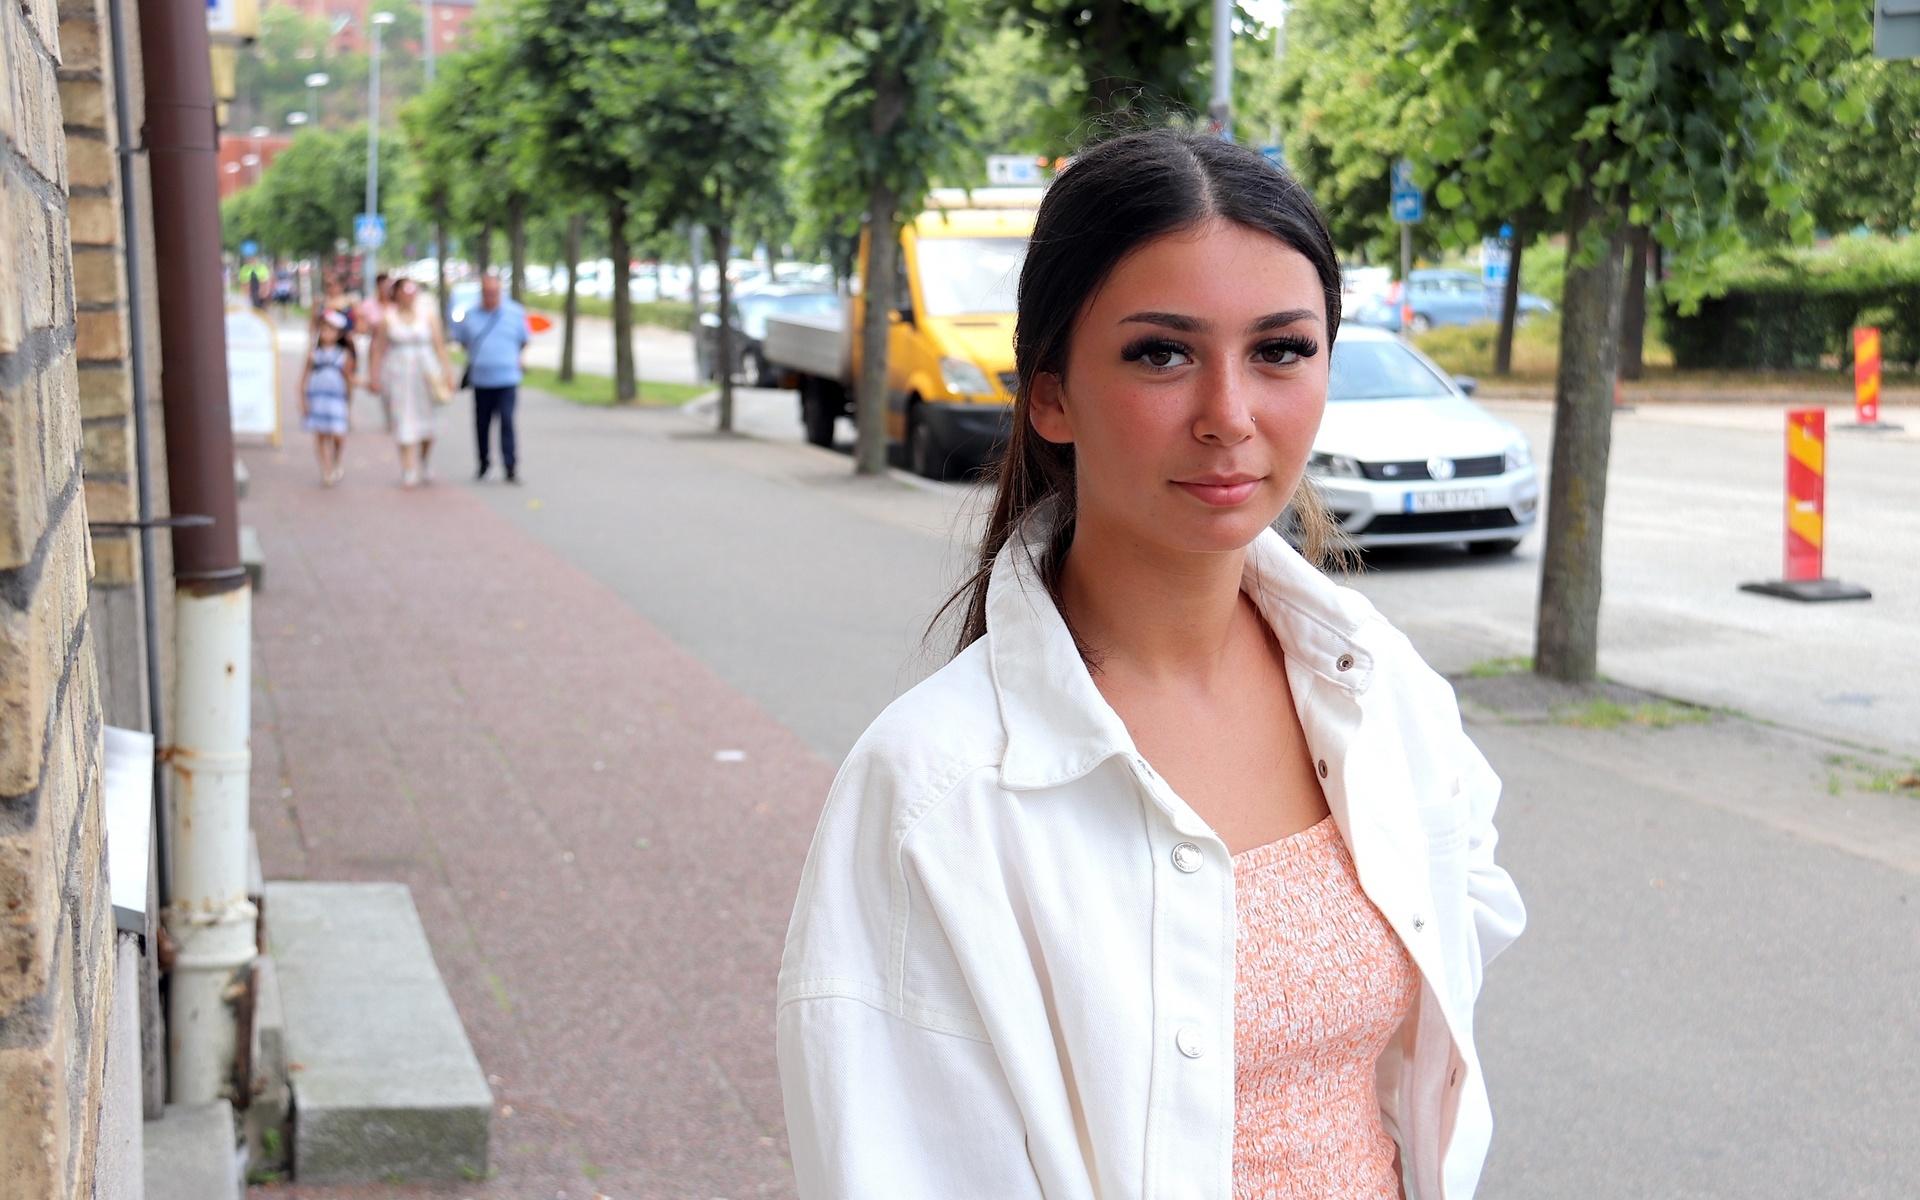 Sasha Annous, 17, bor i Balltorp och är singel. Hon tycker att dejting-utbudet i Mölndal är dåligt.